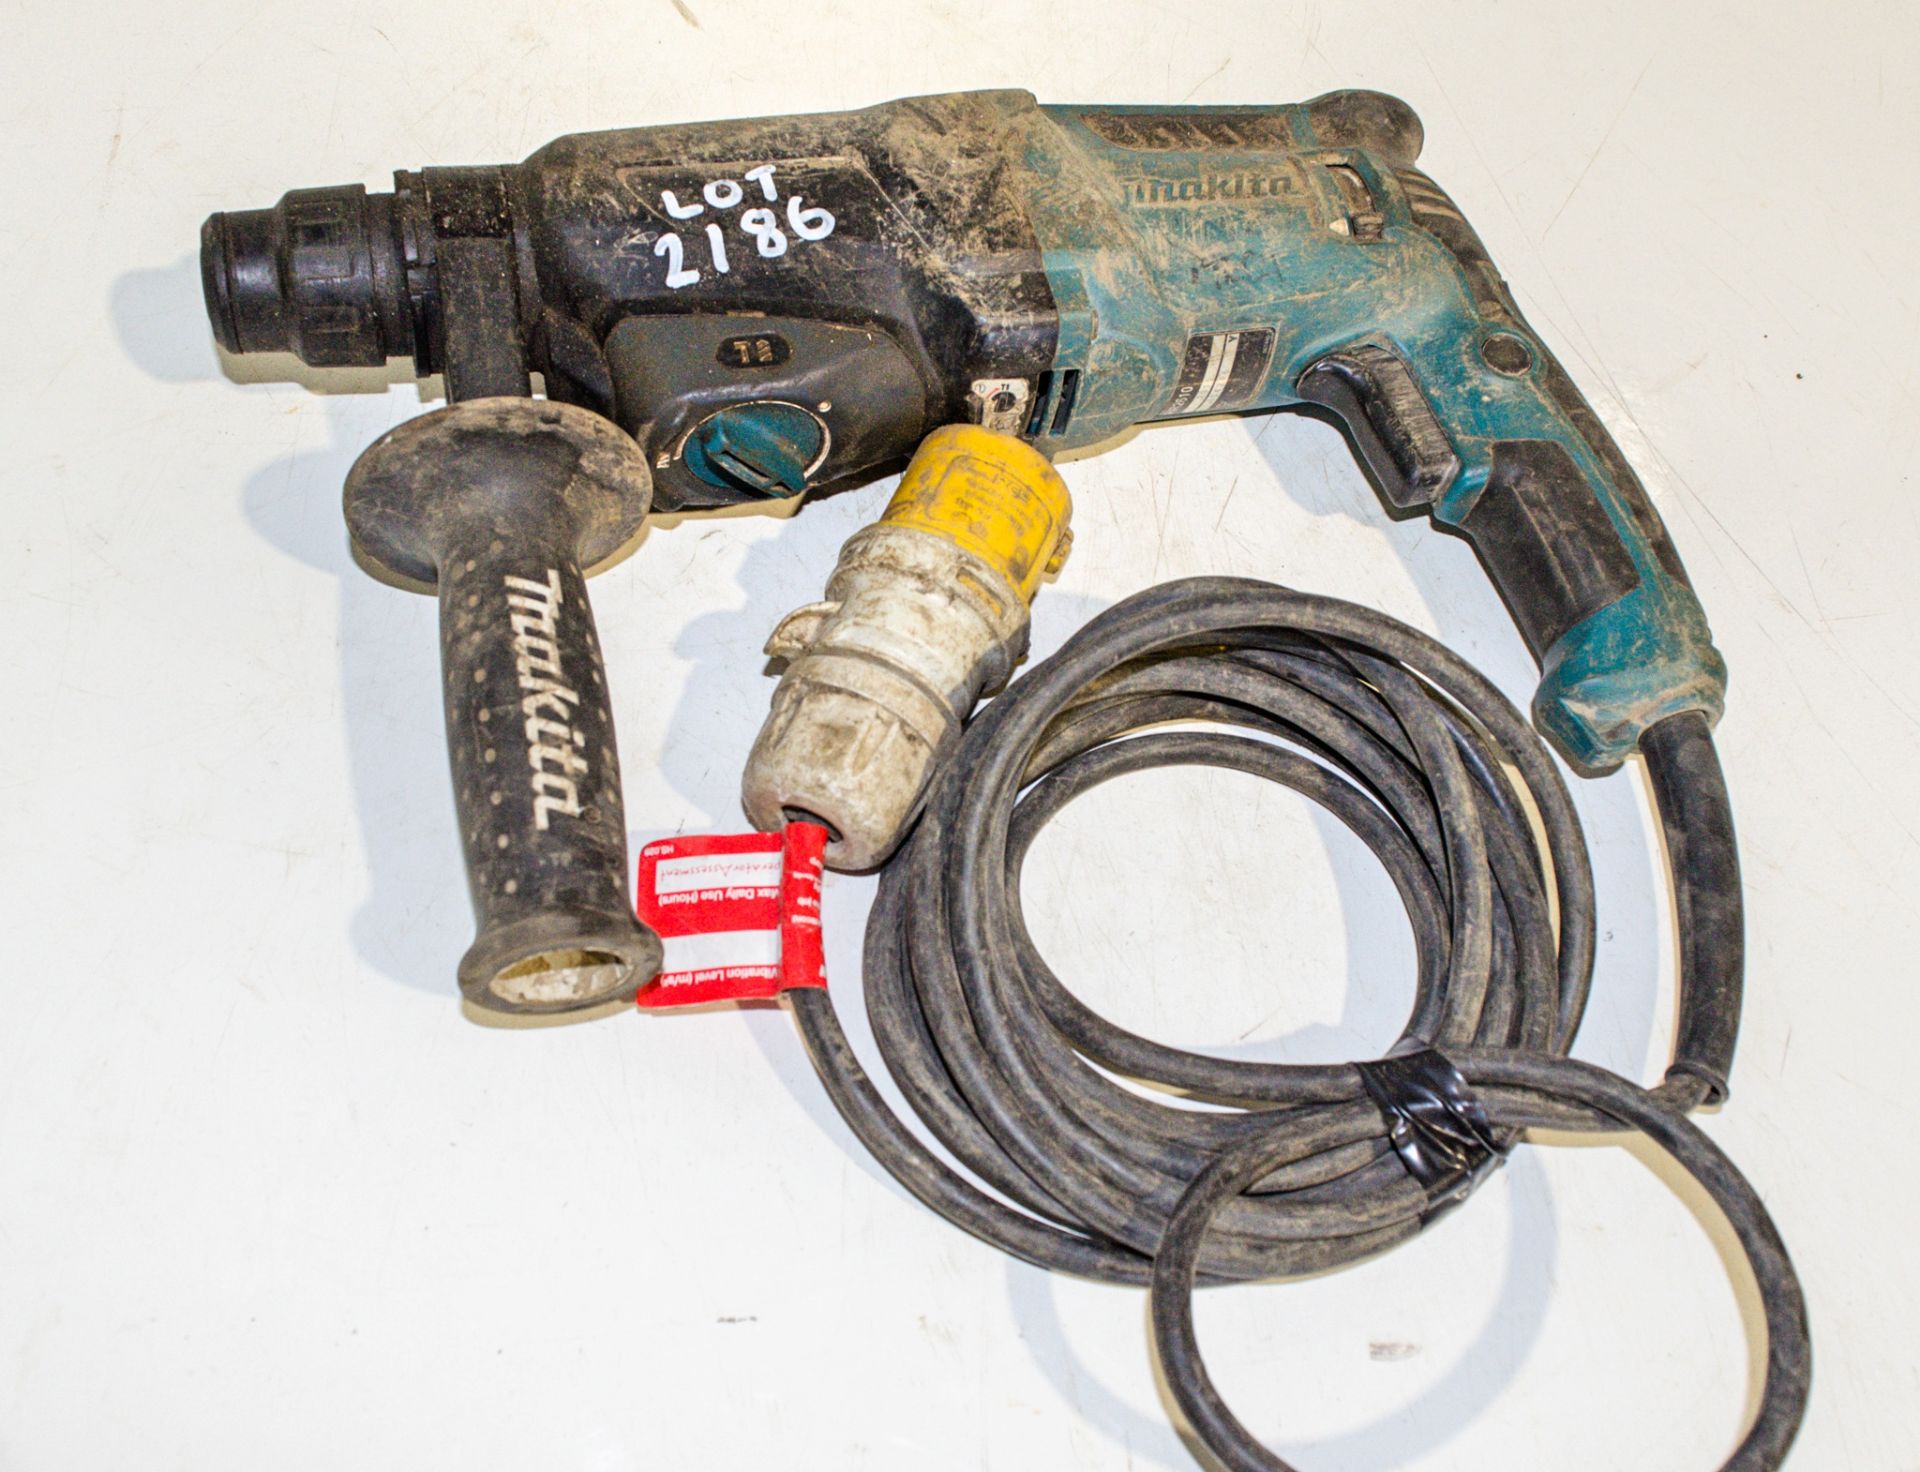 Makita HR2610 110v SDS hammer drill